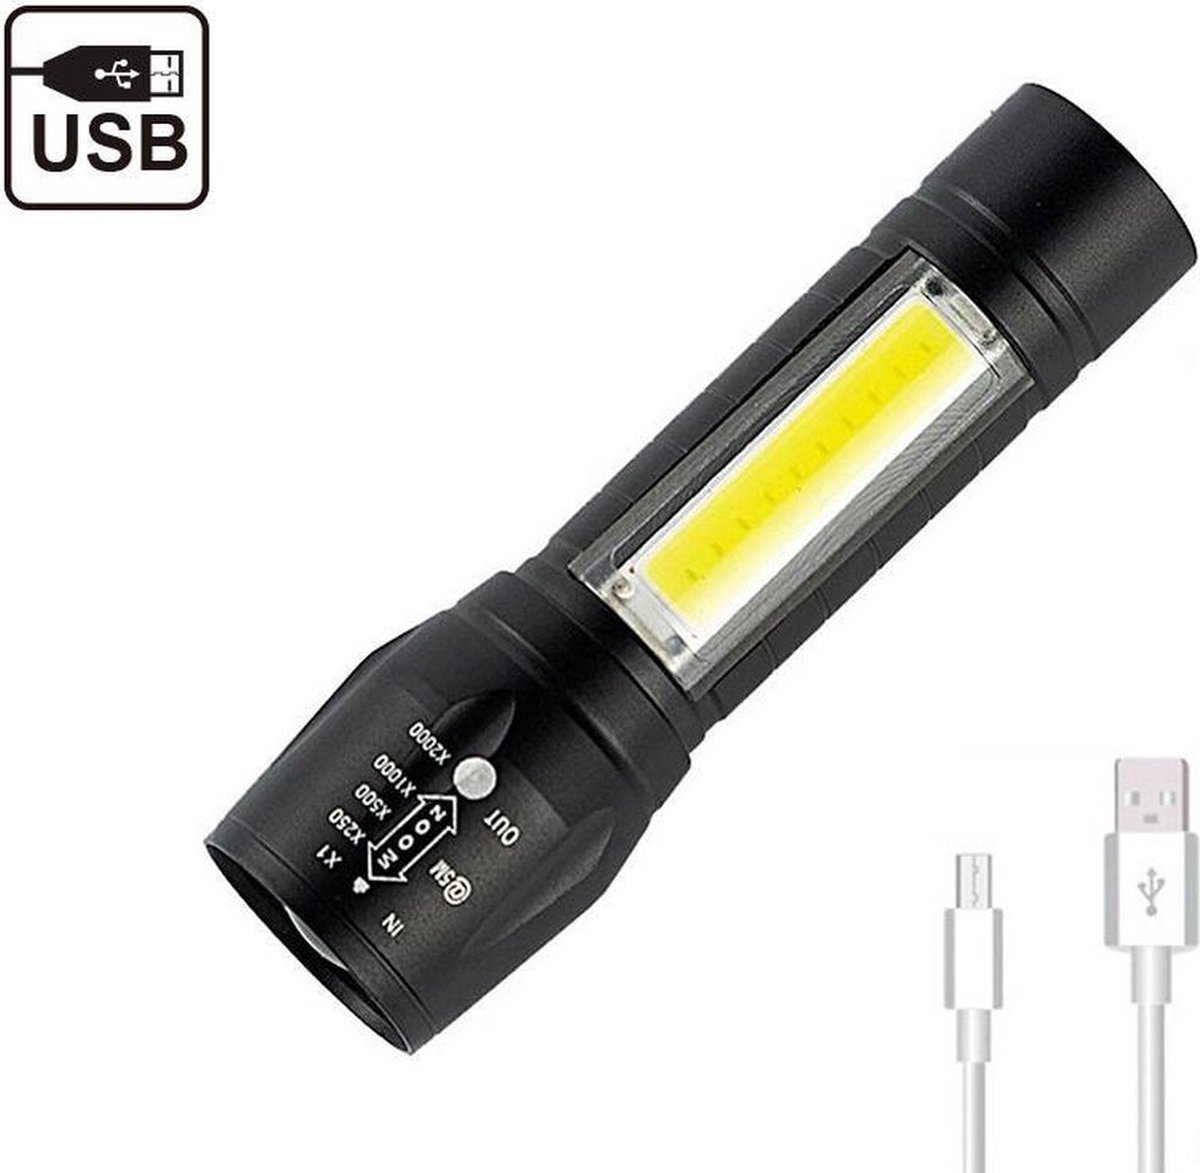 USB Oplaadbare Zaklamp - Zeer fel - Waterdicht - Multi Functioneel - LED - Klein